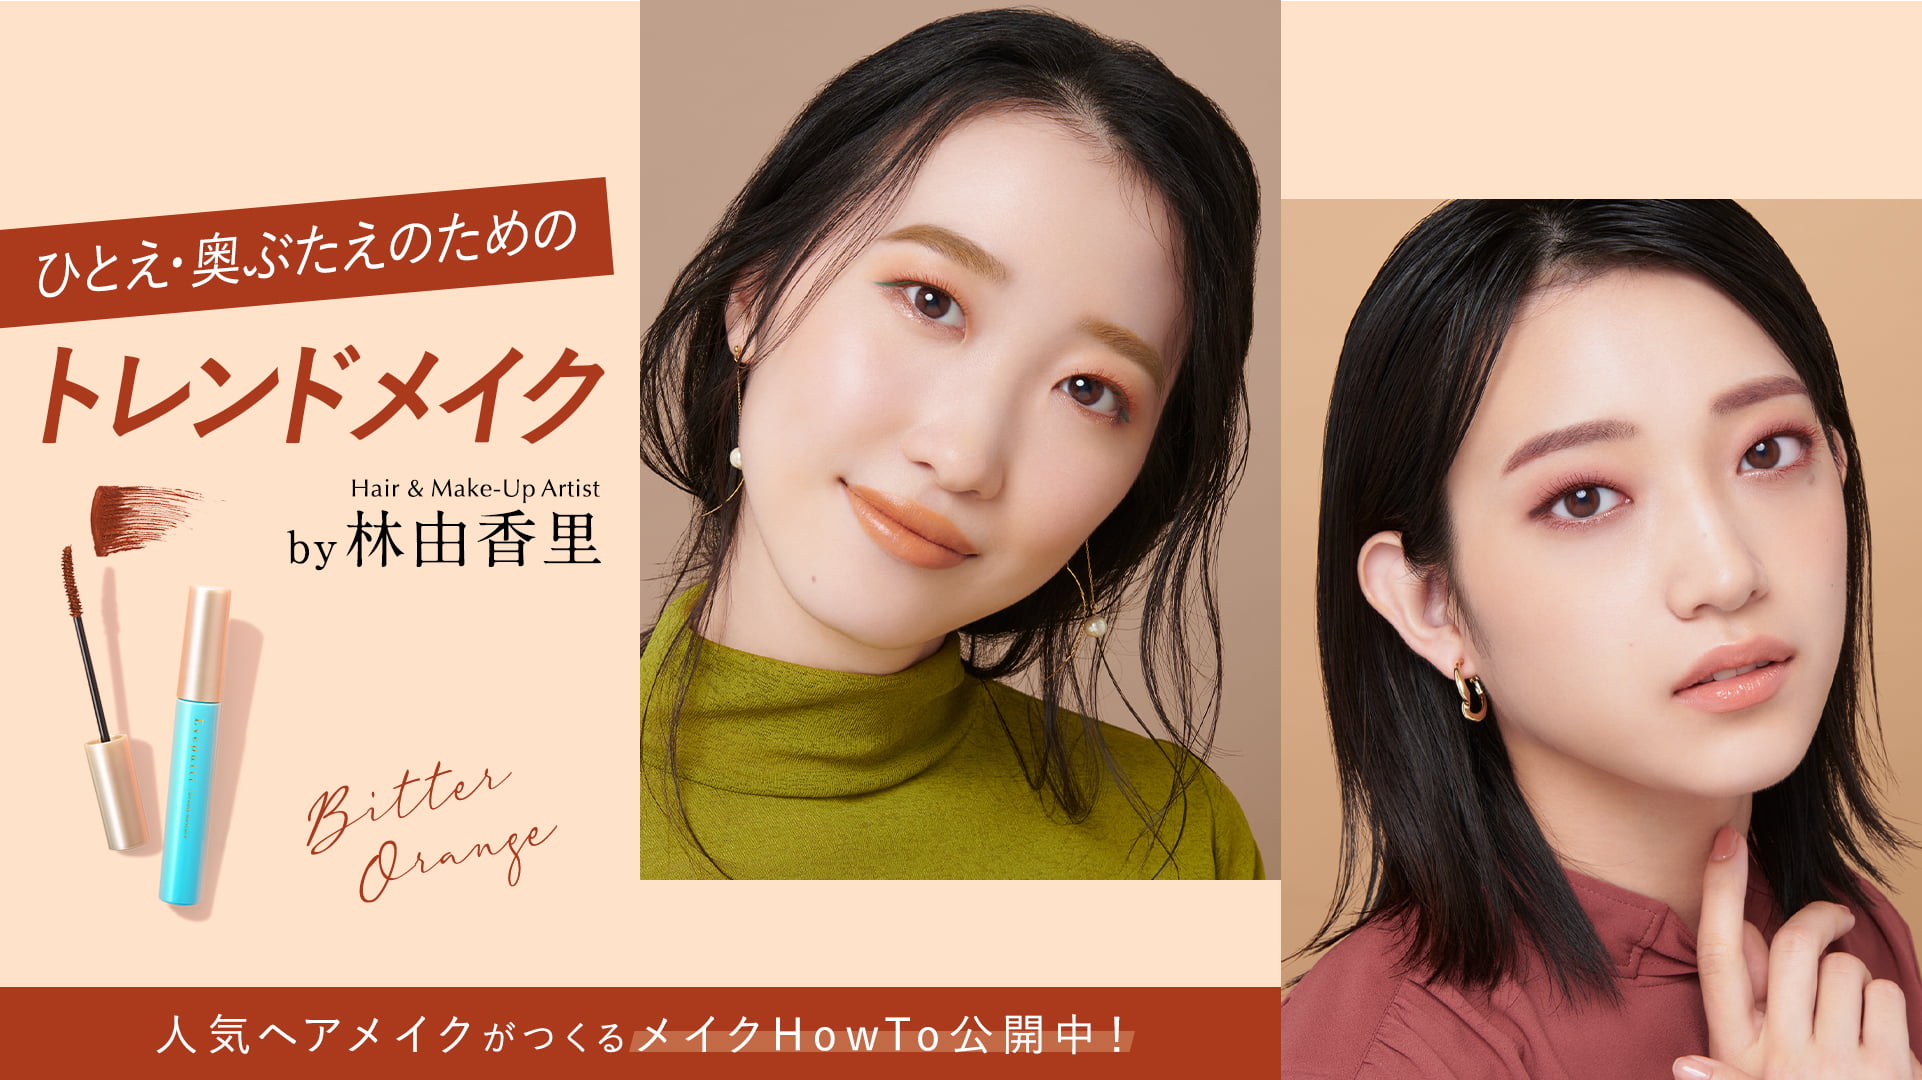 ひとえ・奥ぶたえのためのトレンドメイク Hair & Make-Up Artist by 林由香里 人気ヘアメイクがつくるメイクHowTo公開中！